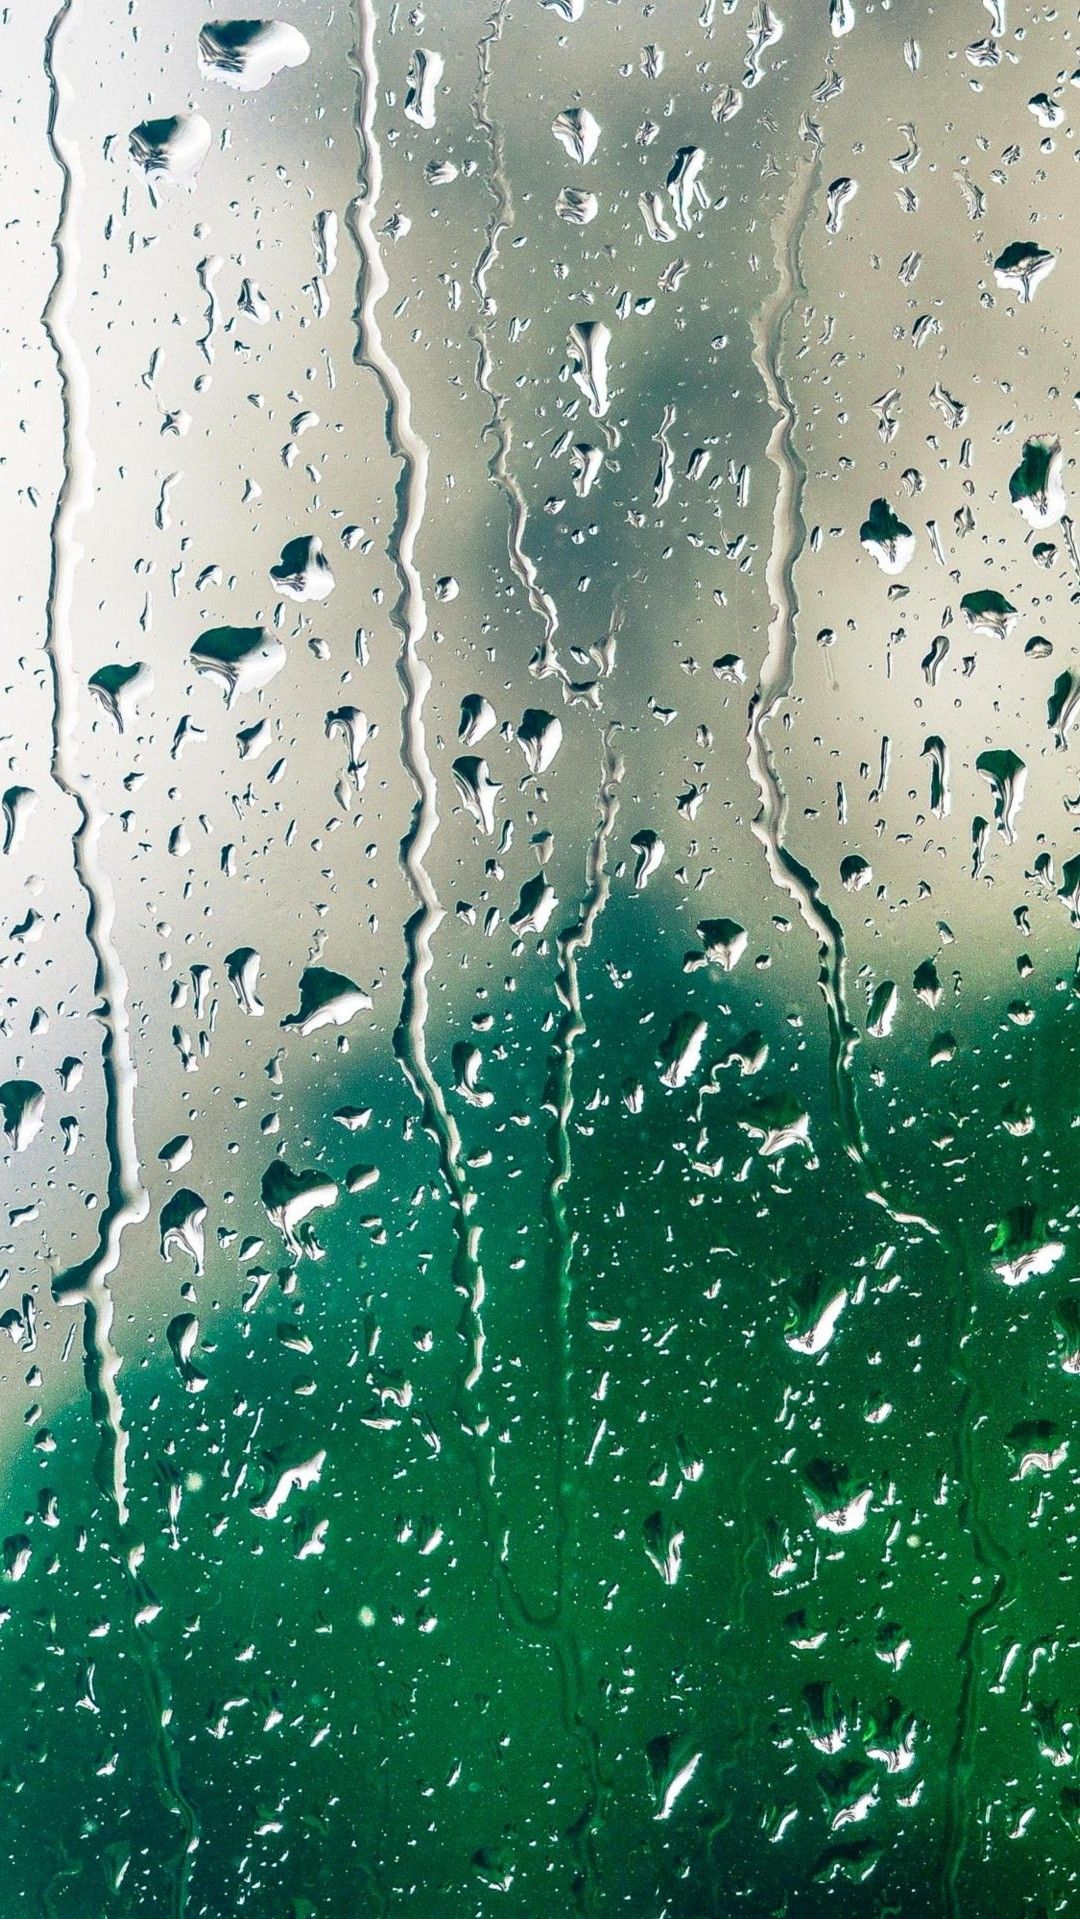 Water Drops On Window - HD Wallpaper 